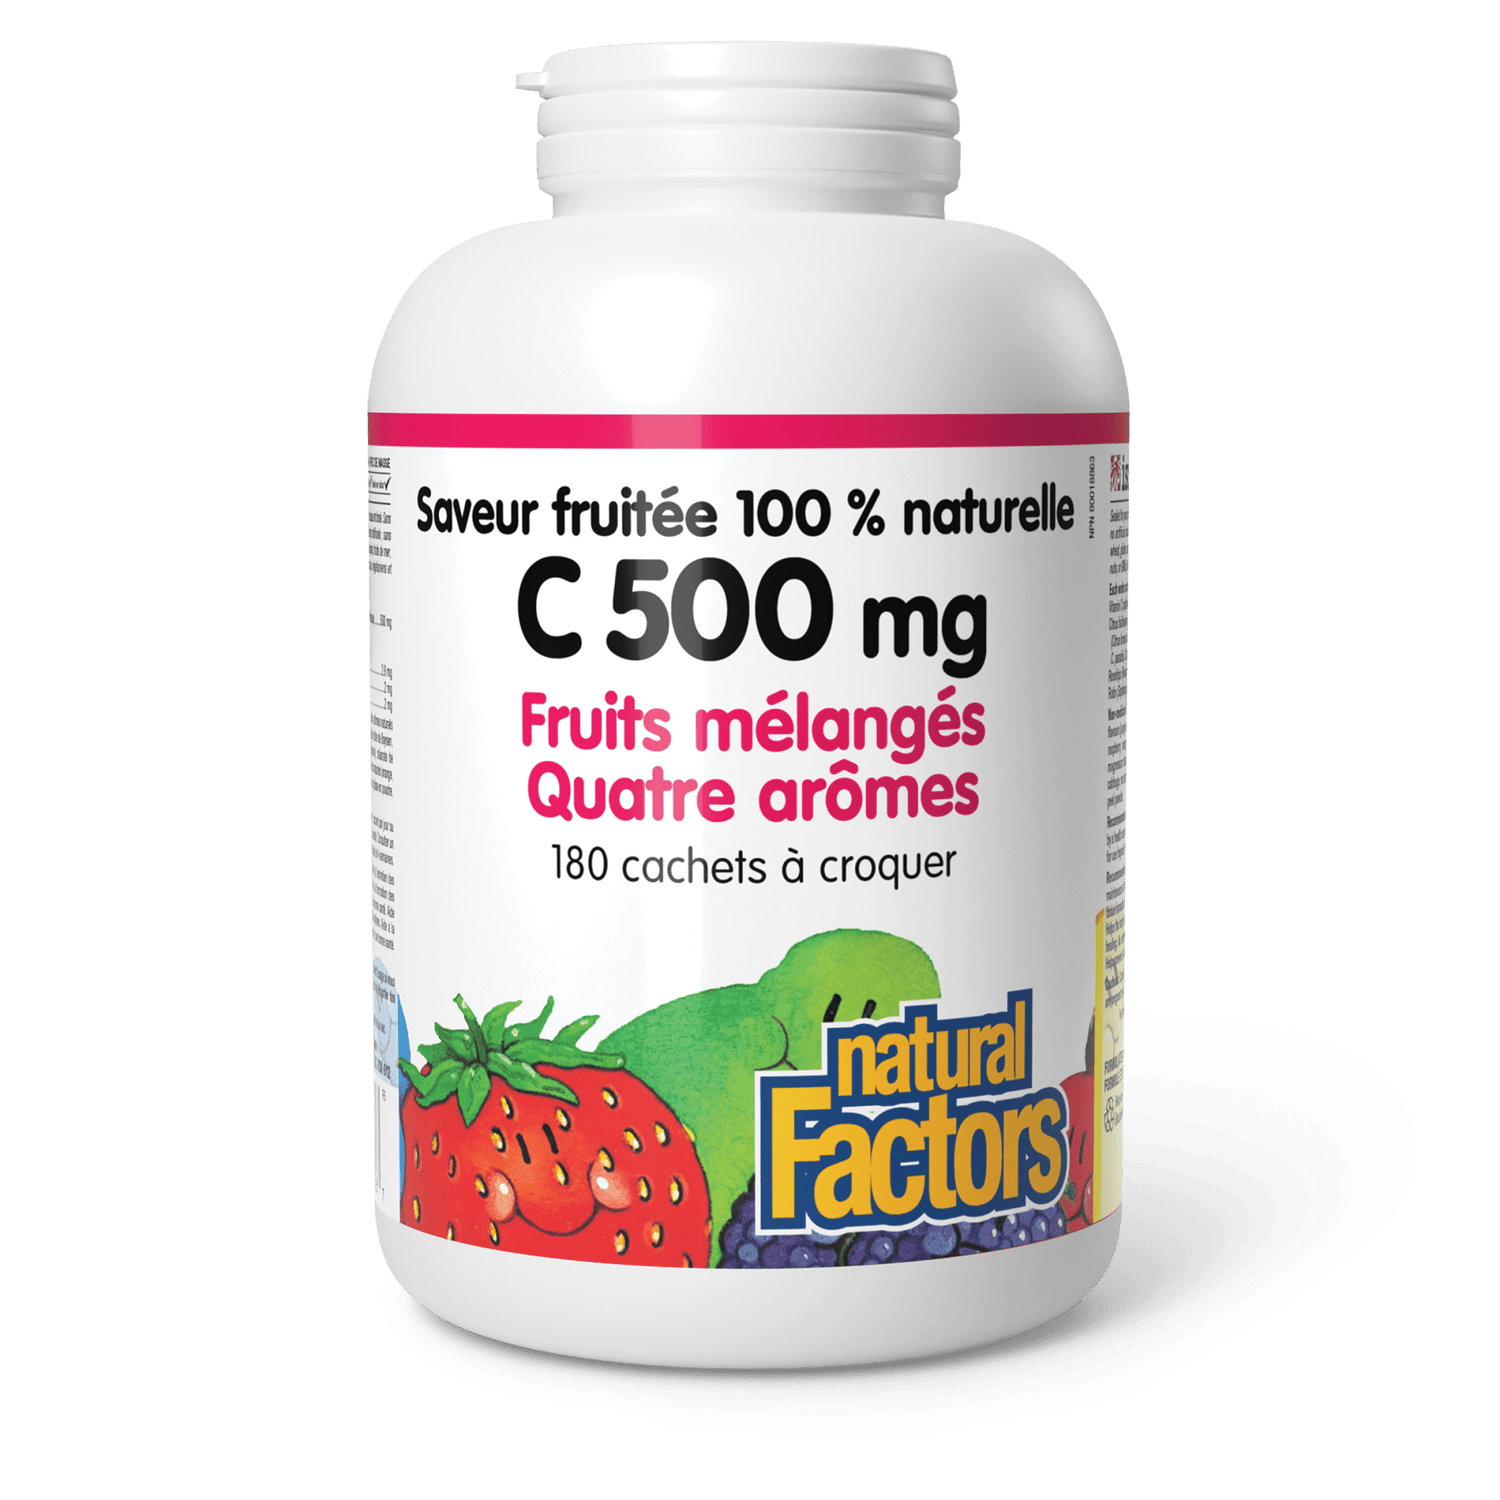 C 500 mg saveur fruitée 100 % naturelle, fruits mélangés, quatre arômes, Natural Factors|v|image|1336